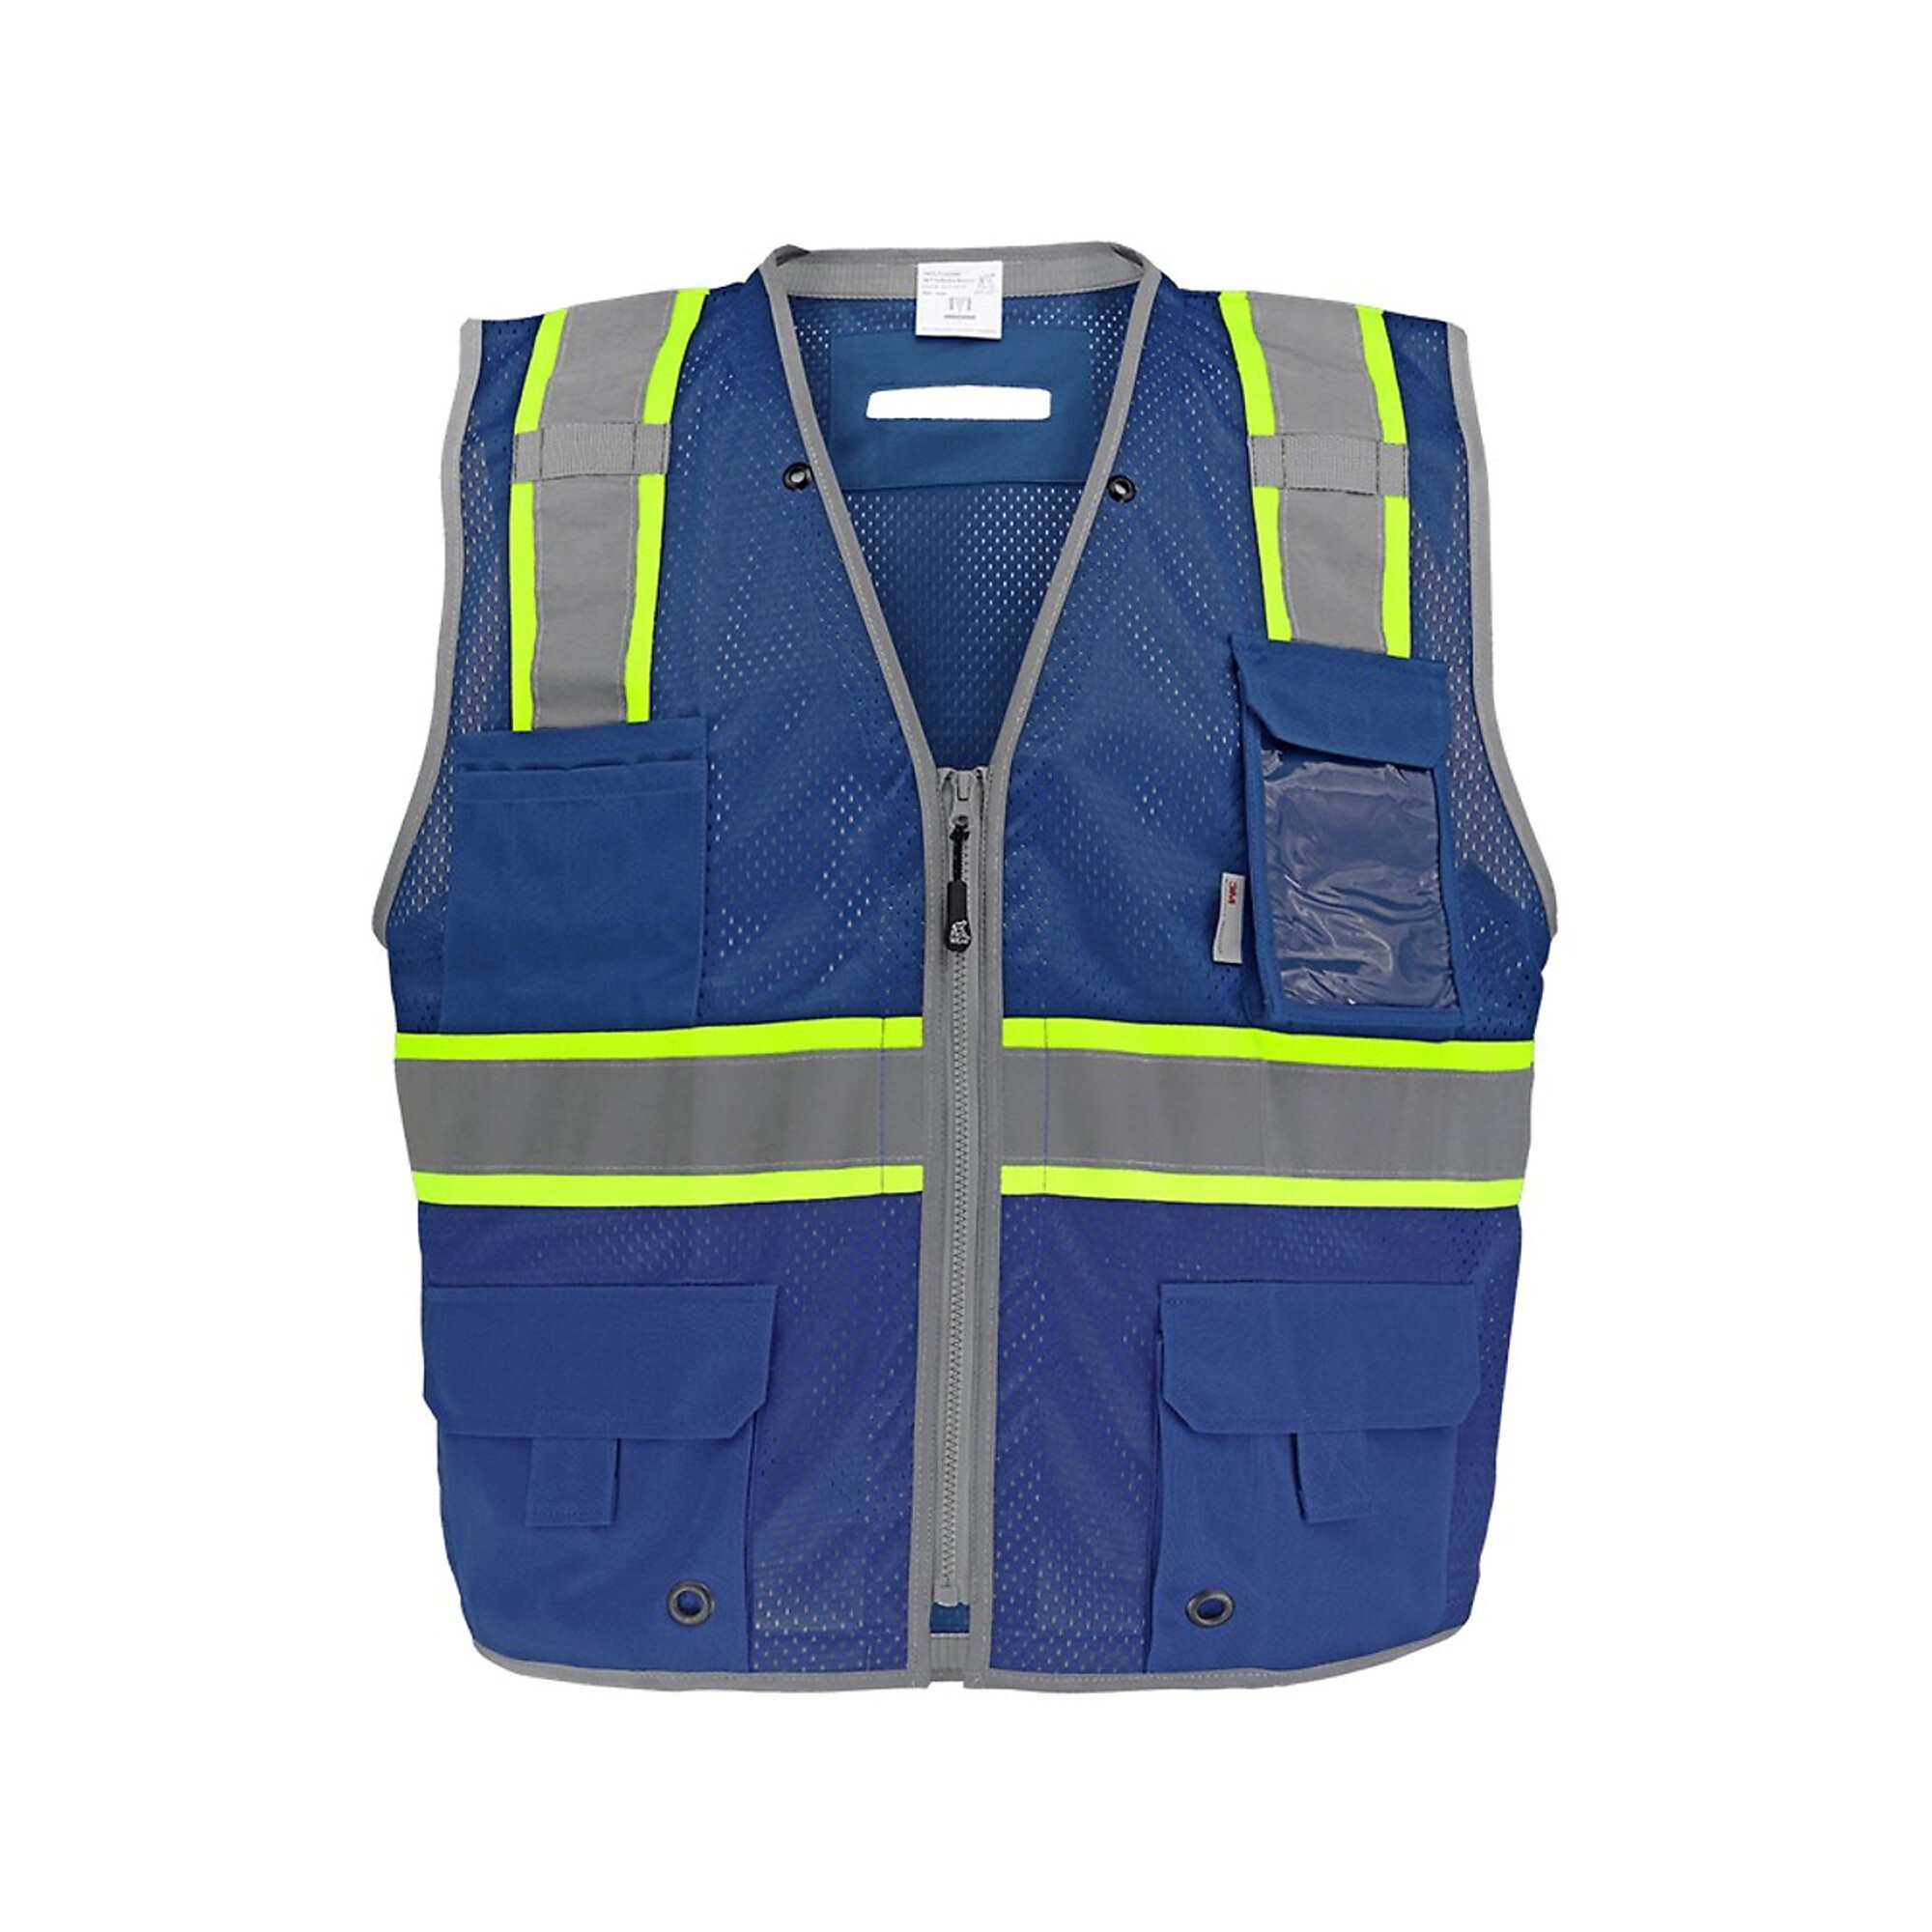 FrogWear Surveyors Vest, 4XL, Blue w/ Reflector, Model GLO-067B-4XL